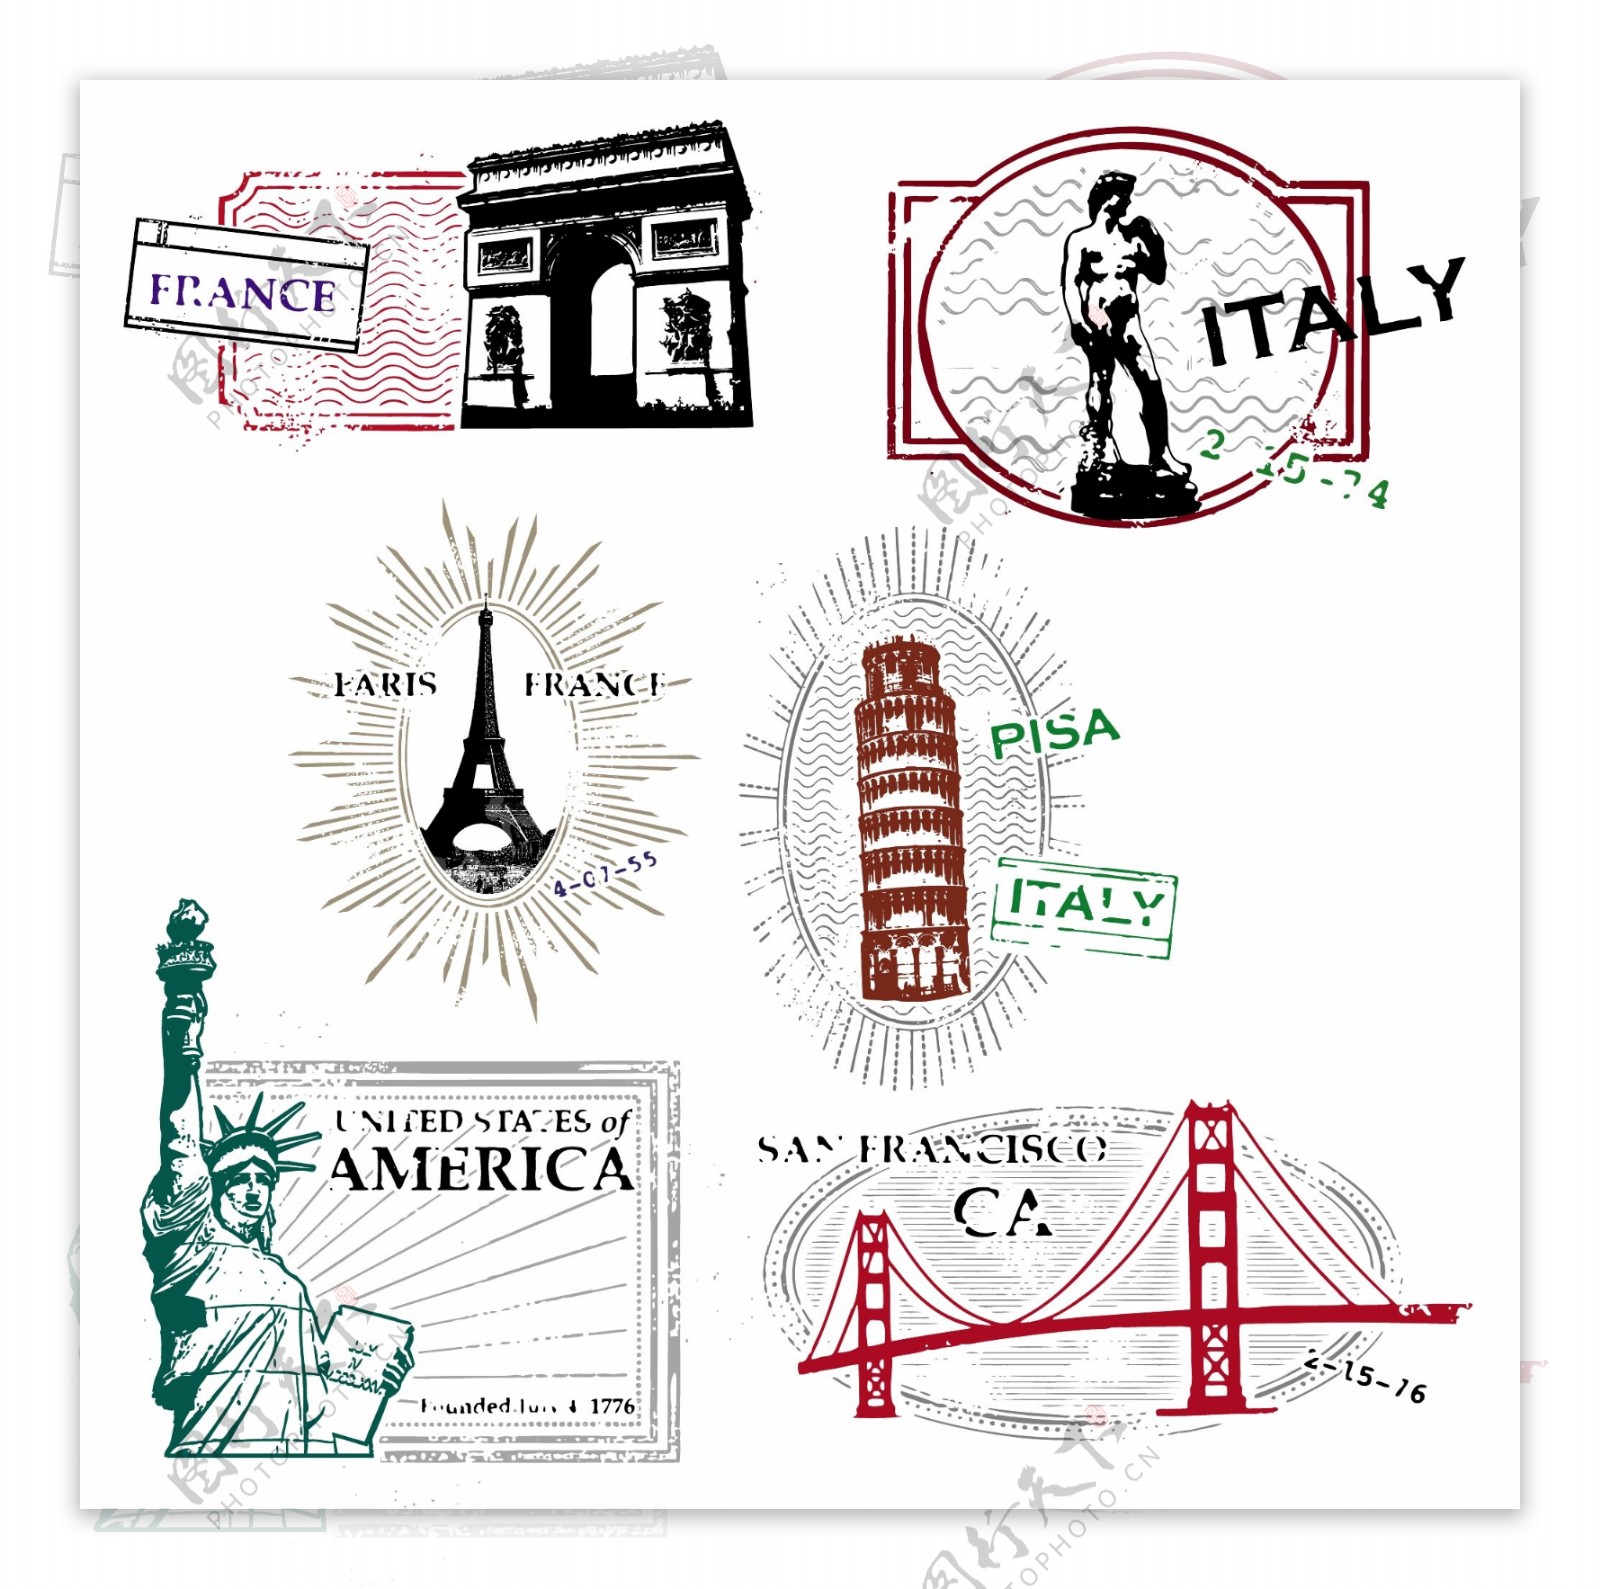 具有里程碑意义的旅游系列邮票